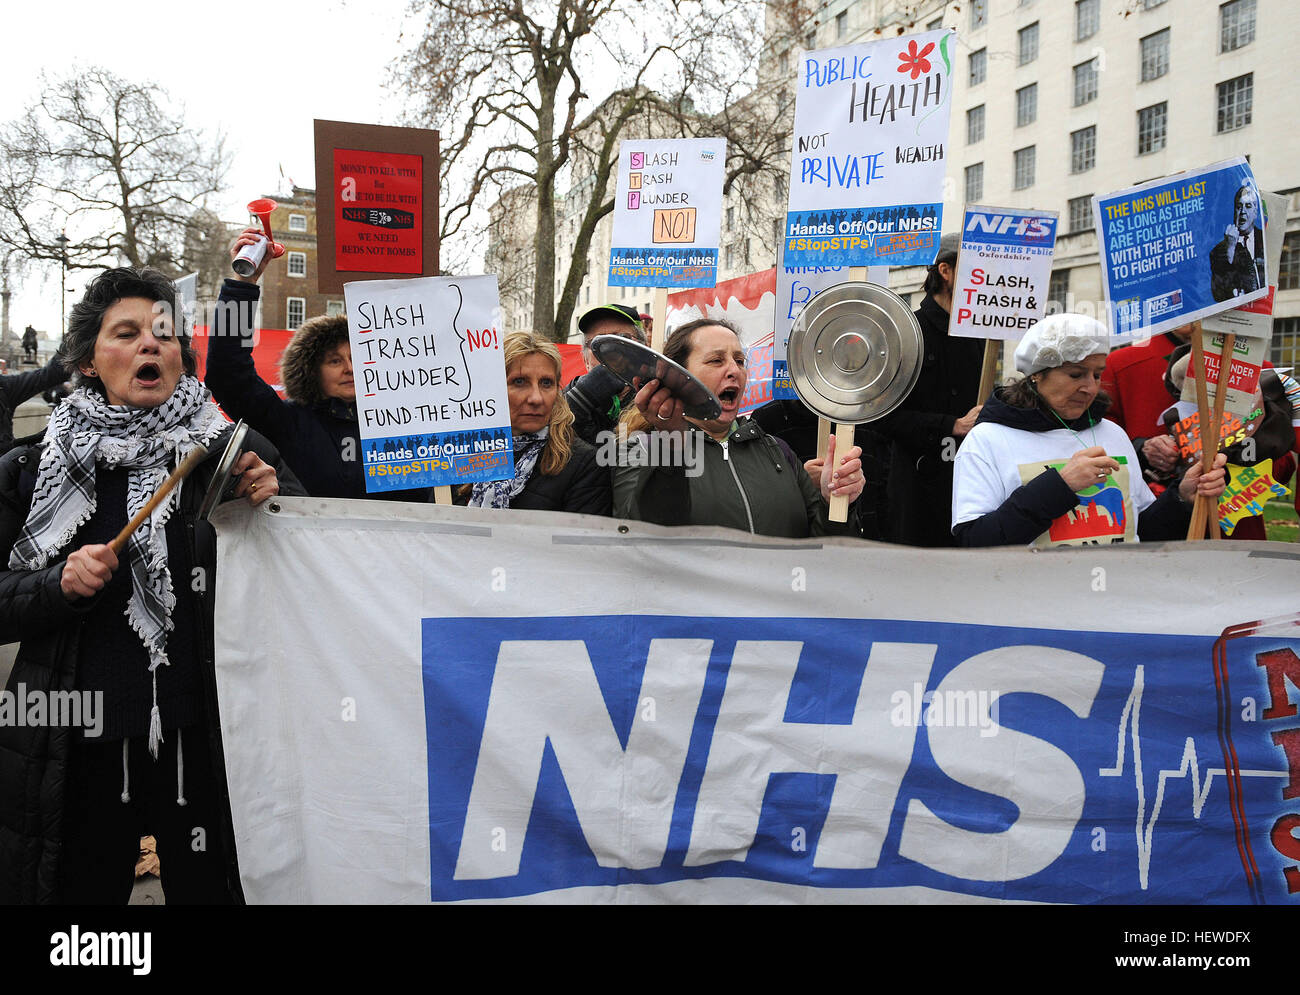 Los activistas durante la manifestación de Howl of Protest convocada por Hands Off nuestra campaña de NHS, se reúnen frente a Downing Street, con cuernos y silbatos, etc., con los que crearán aullidos de ruido para coincidir con los truenos de las redes sociales mientras protestan por salvar al NHS de los recortes. Foto de stock